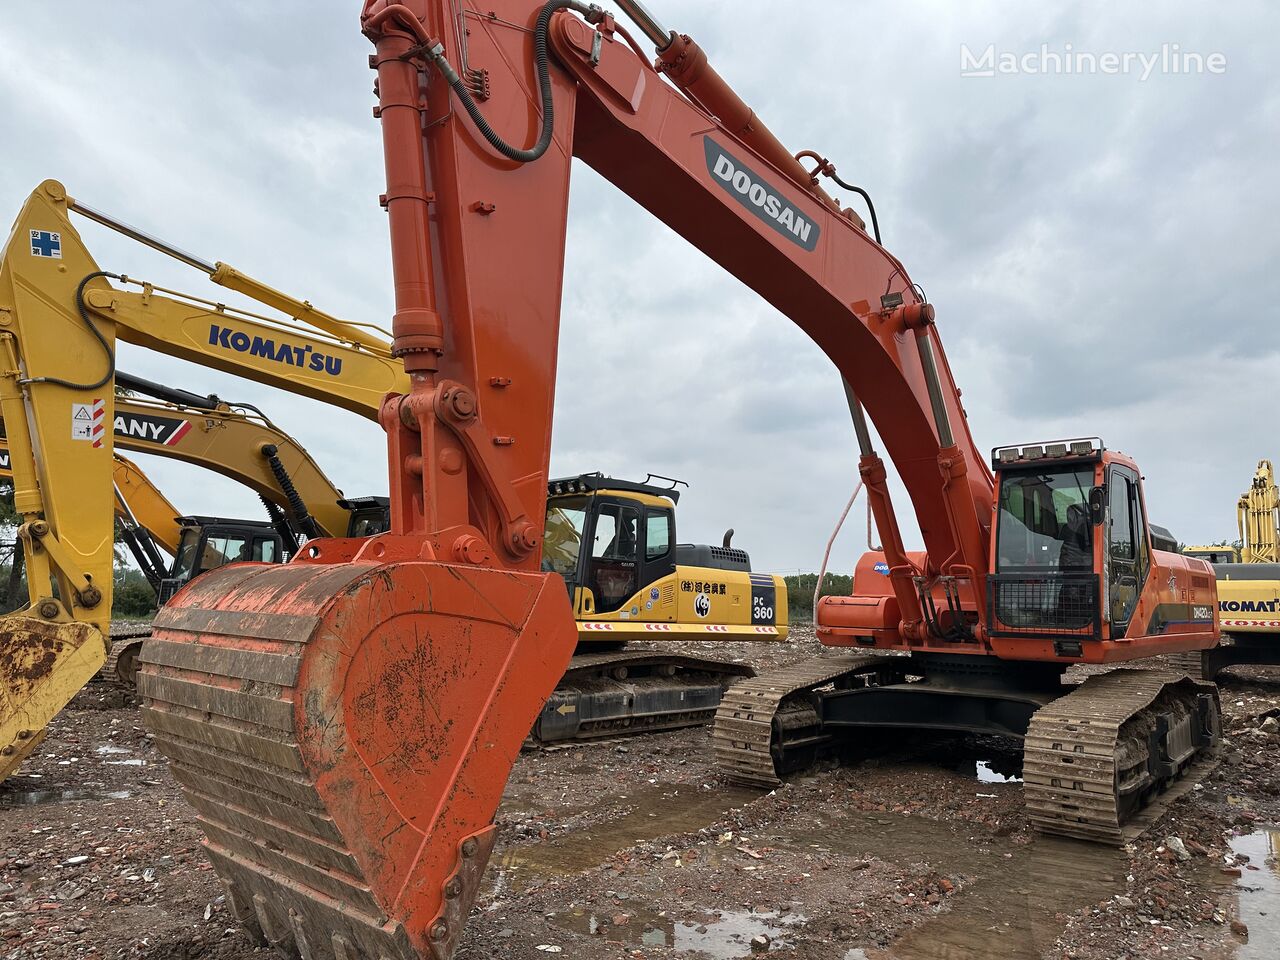 Doosan DH420 tracked excavator